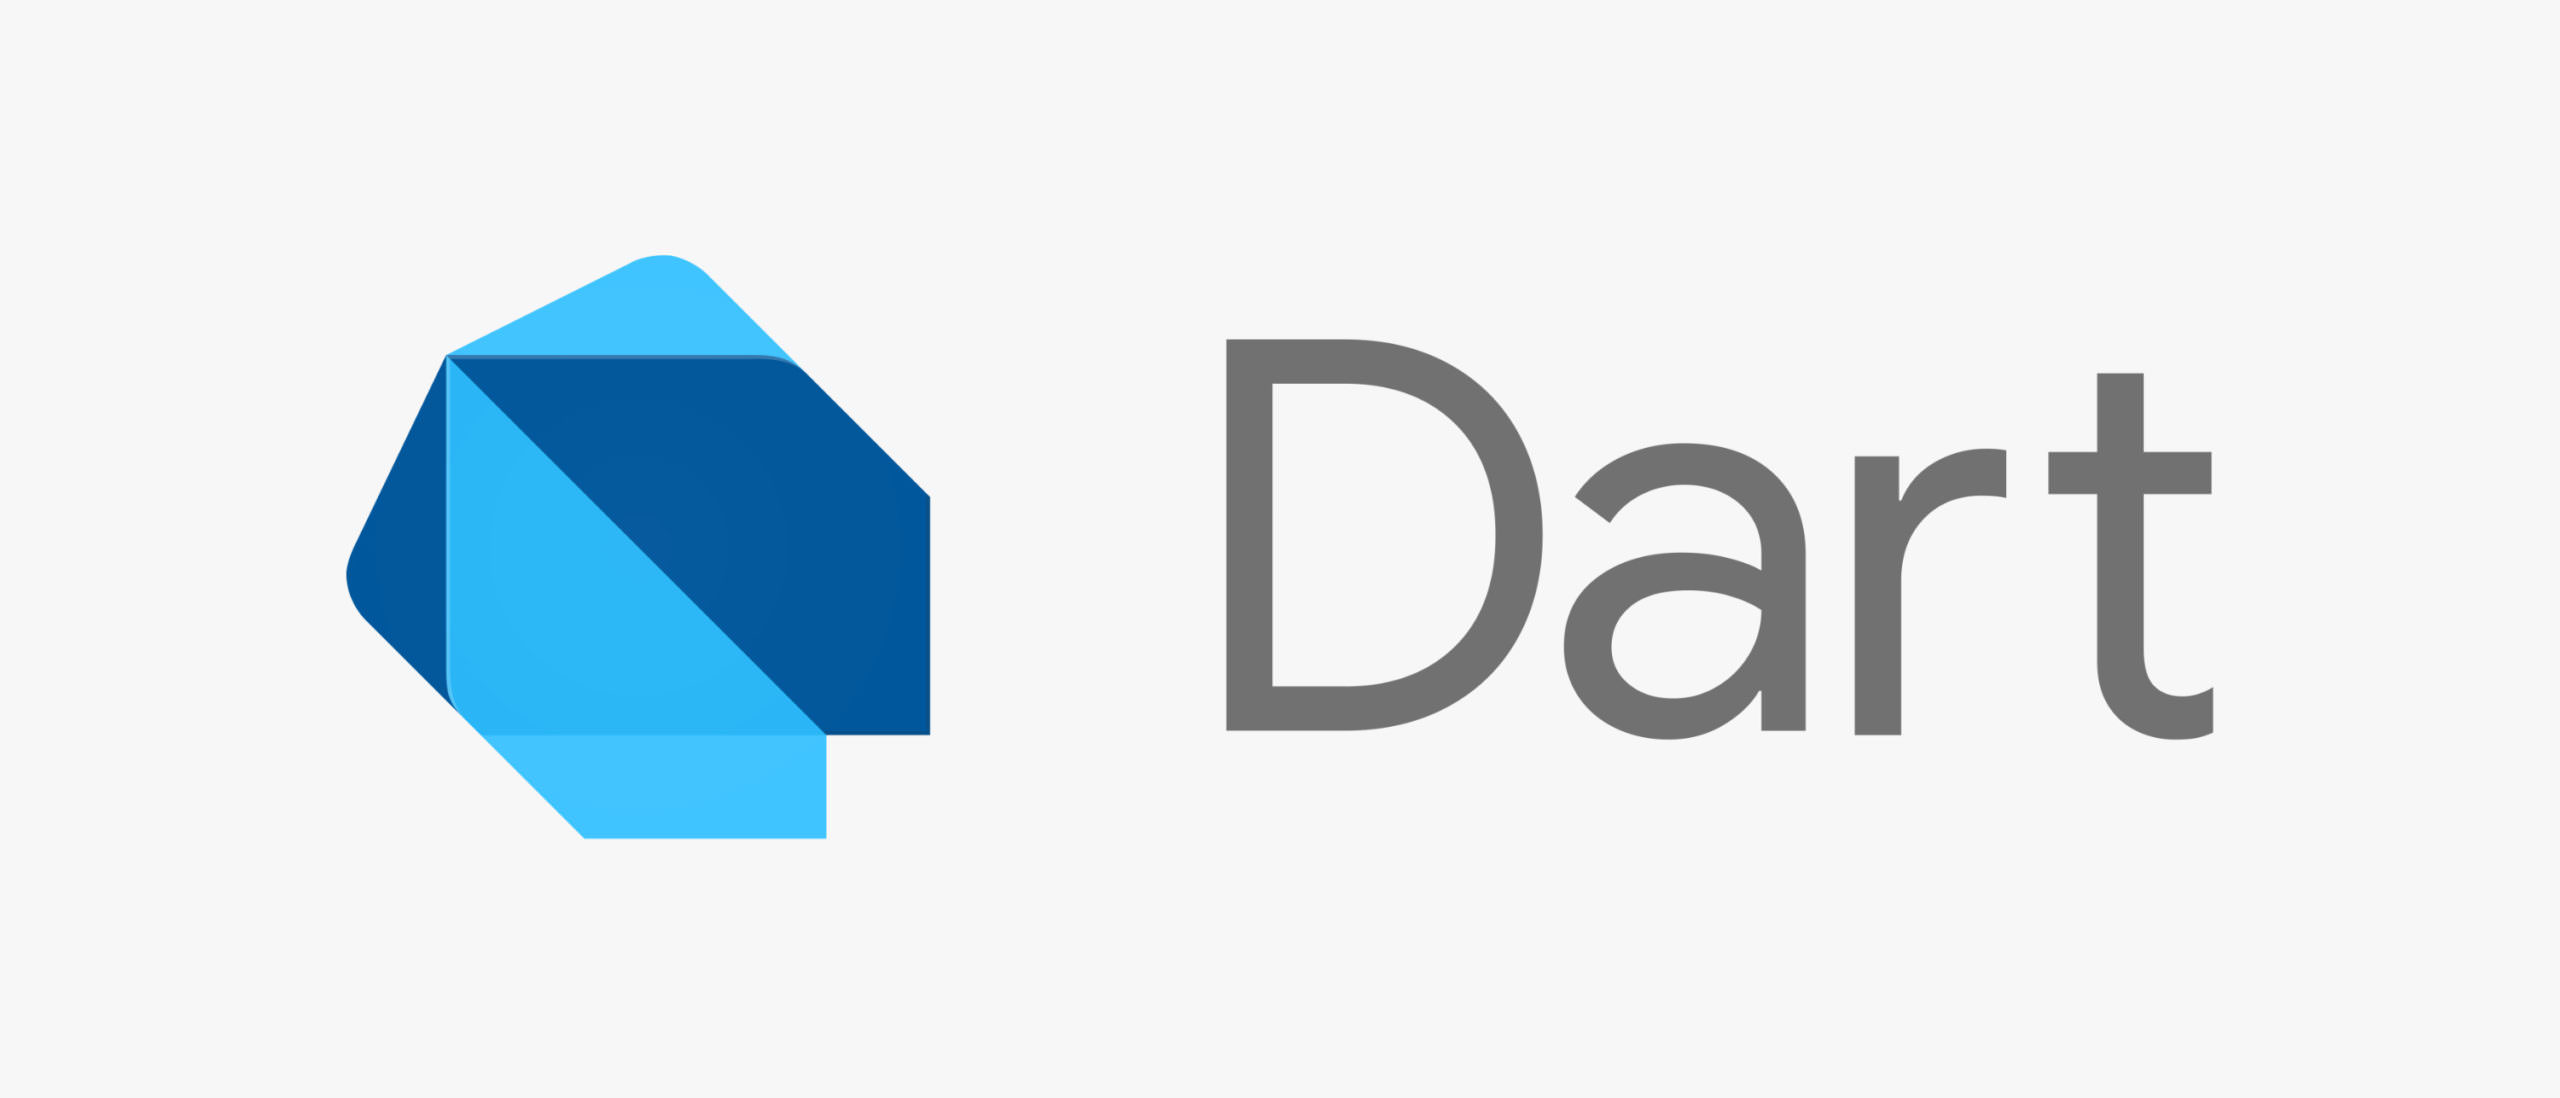 Dart programming language logo